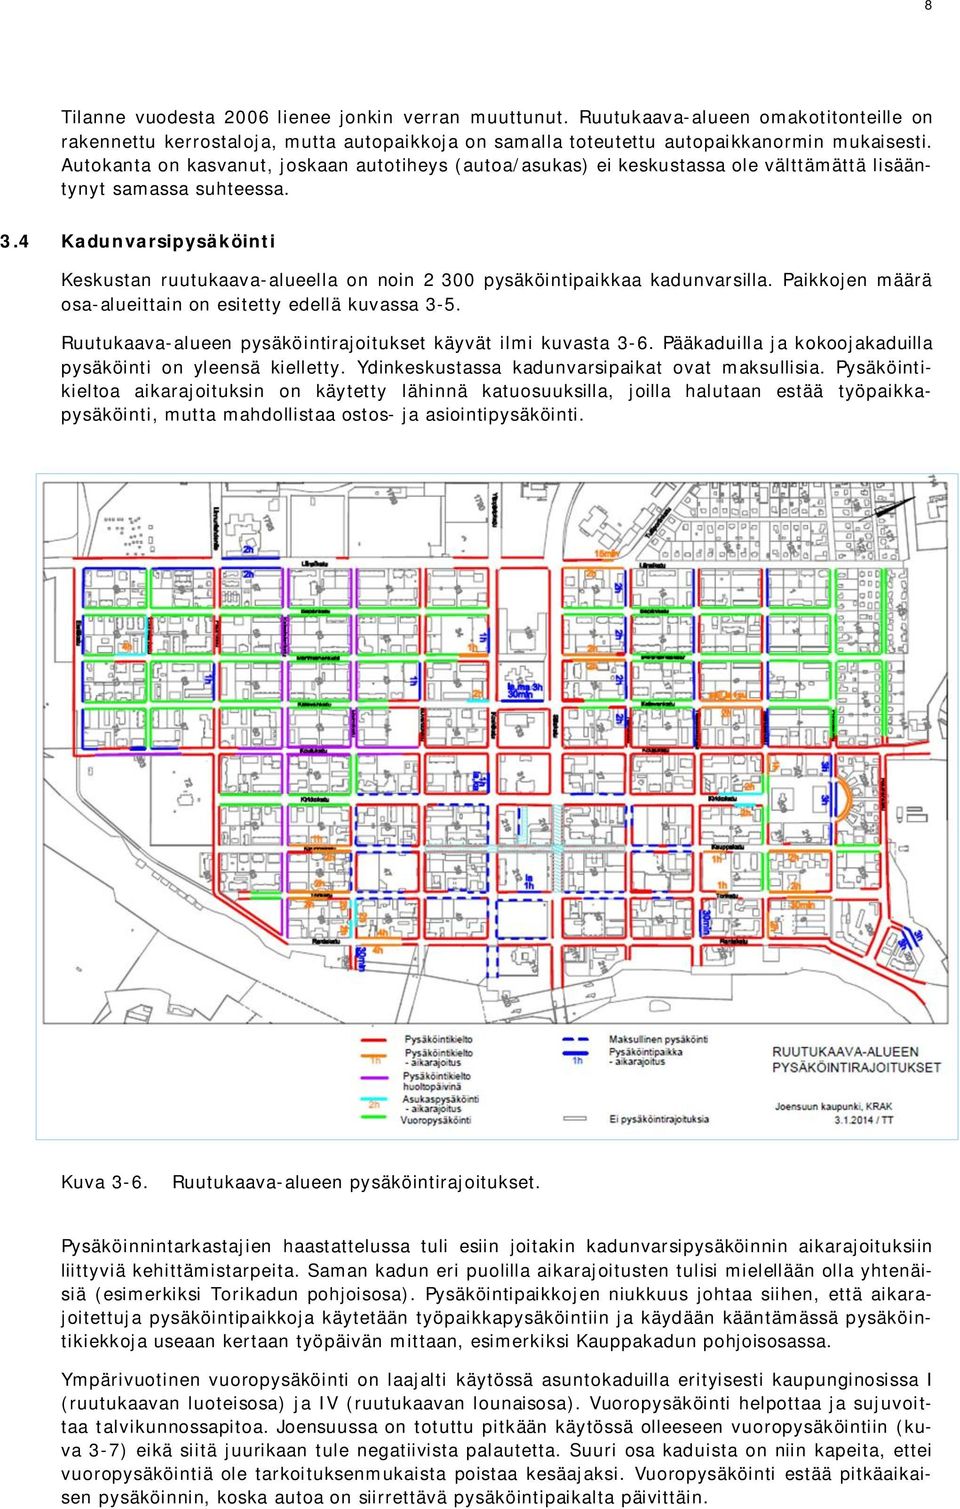 4 Kadunvarsipysäköinti Keskustan ruutukaava-alueella on noin 2 300 pysäköintipaikkaa kadunvarsilla. Paikkojen määrä osa-alueittain on esitetty edellä kuvassa 3-5.